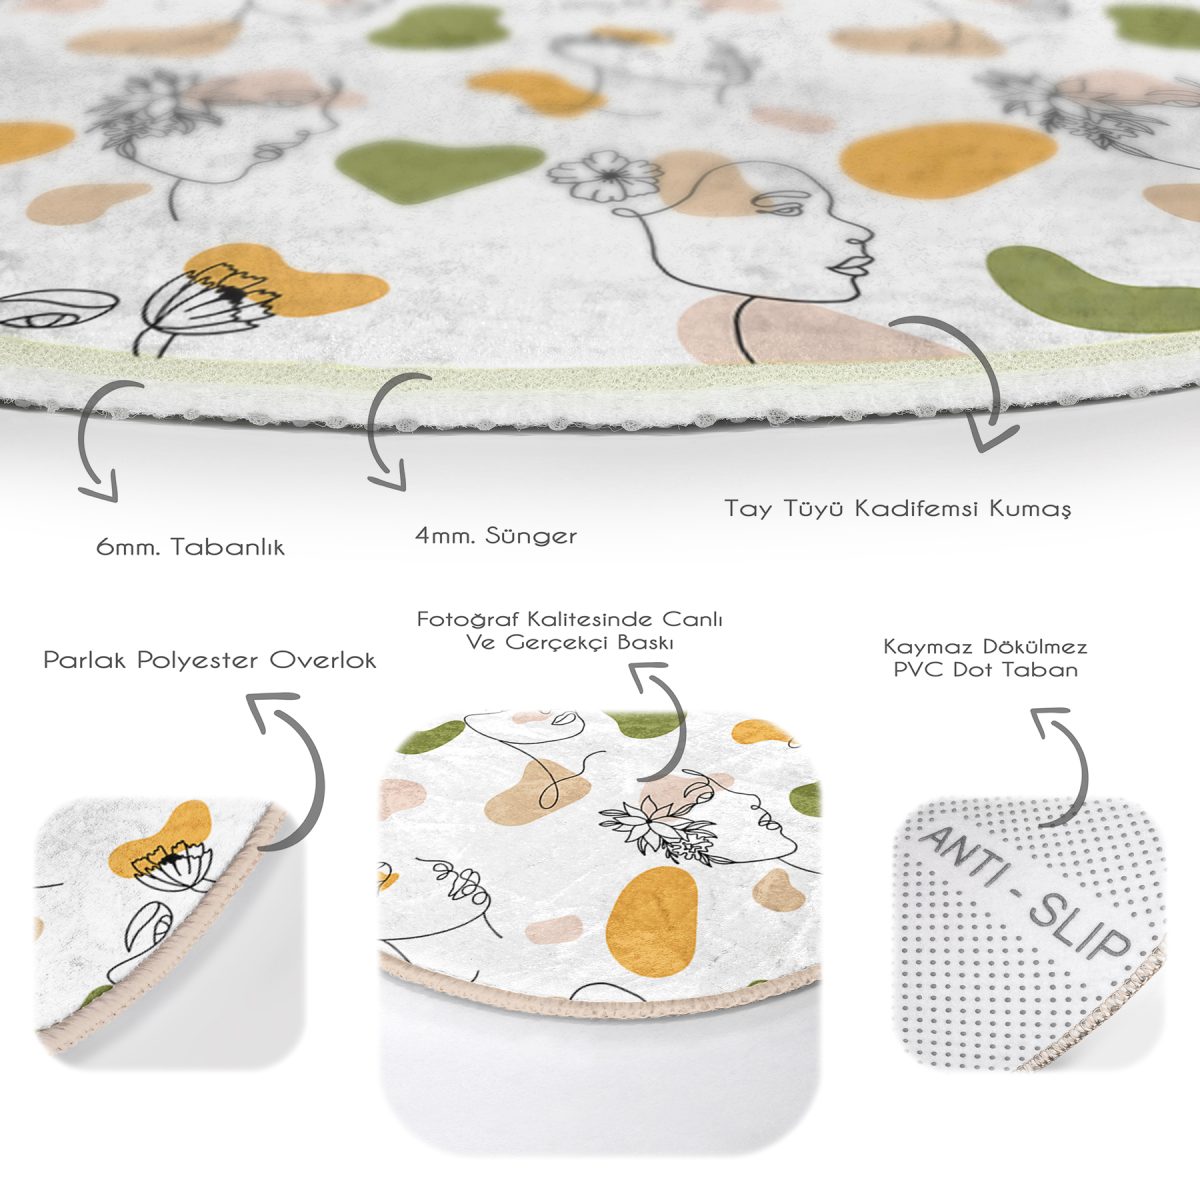 Beyaz Zeminde Bayan Desenli Dijital Baskılı Modern Renkli Mutfak Yıkanabilir Kaymaz Tabanlı Yuvarlak Halı Realhomes